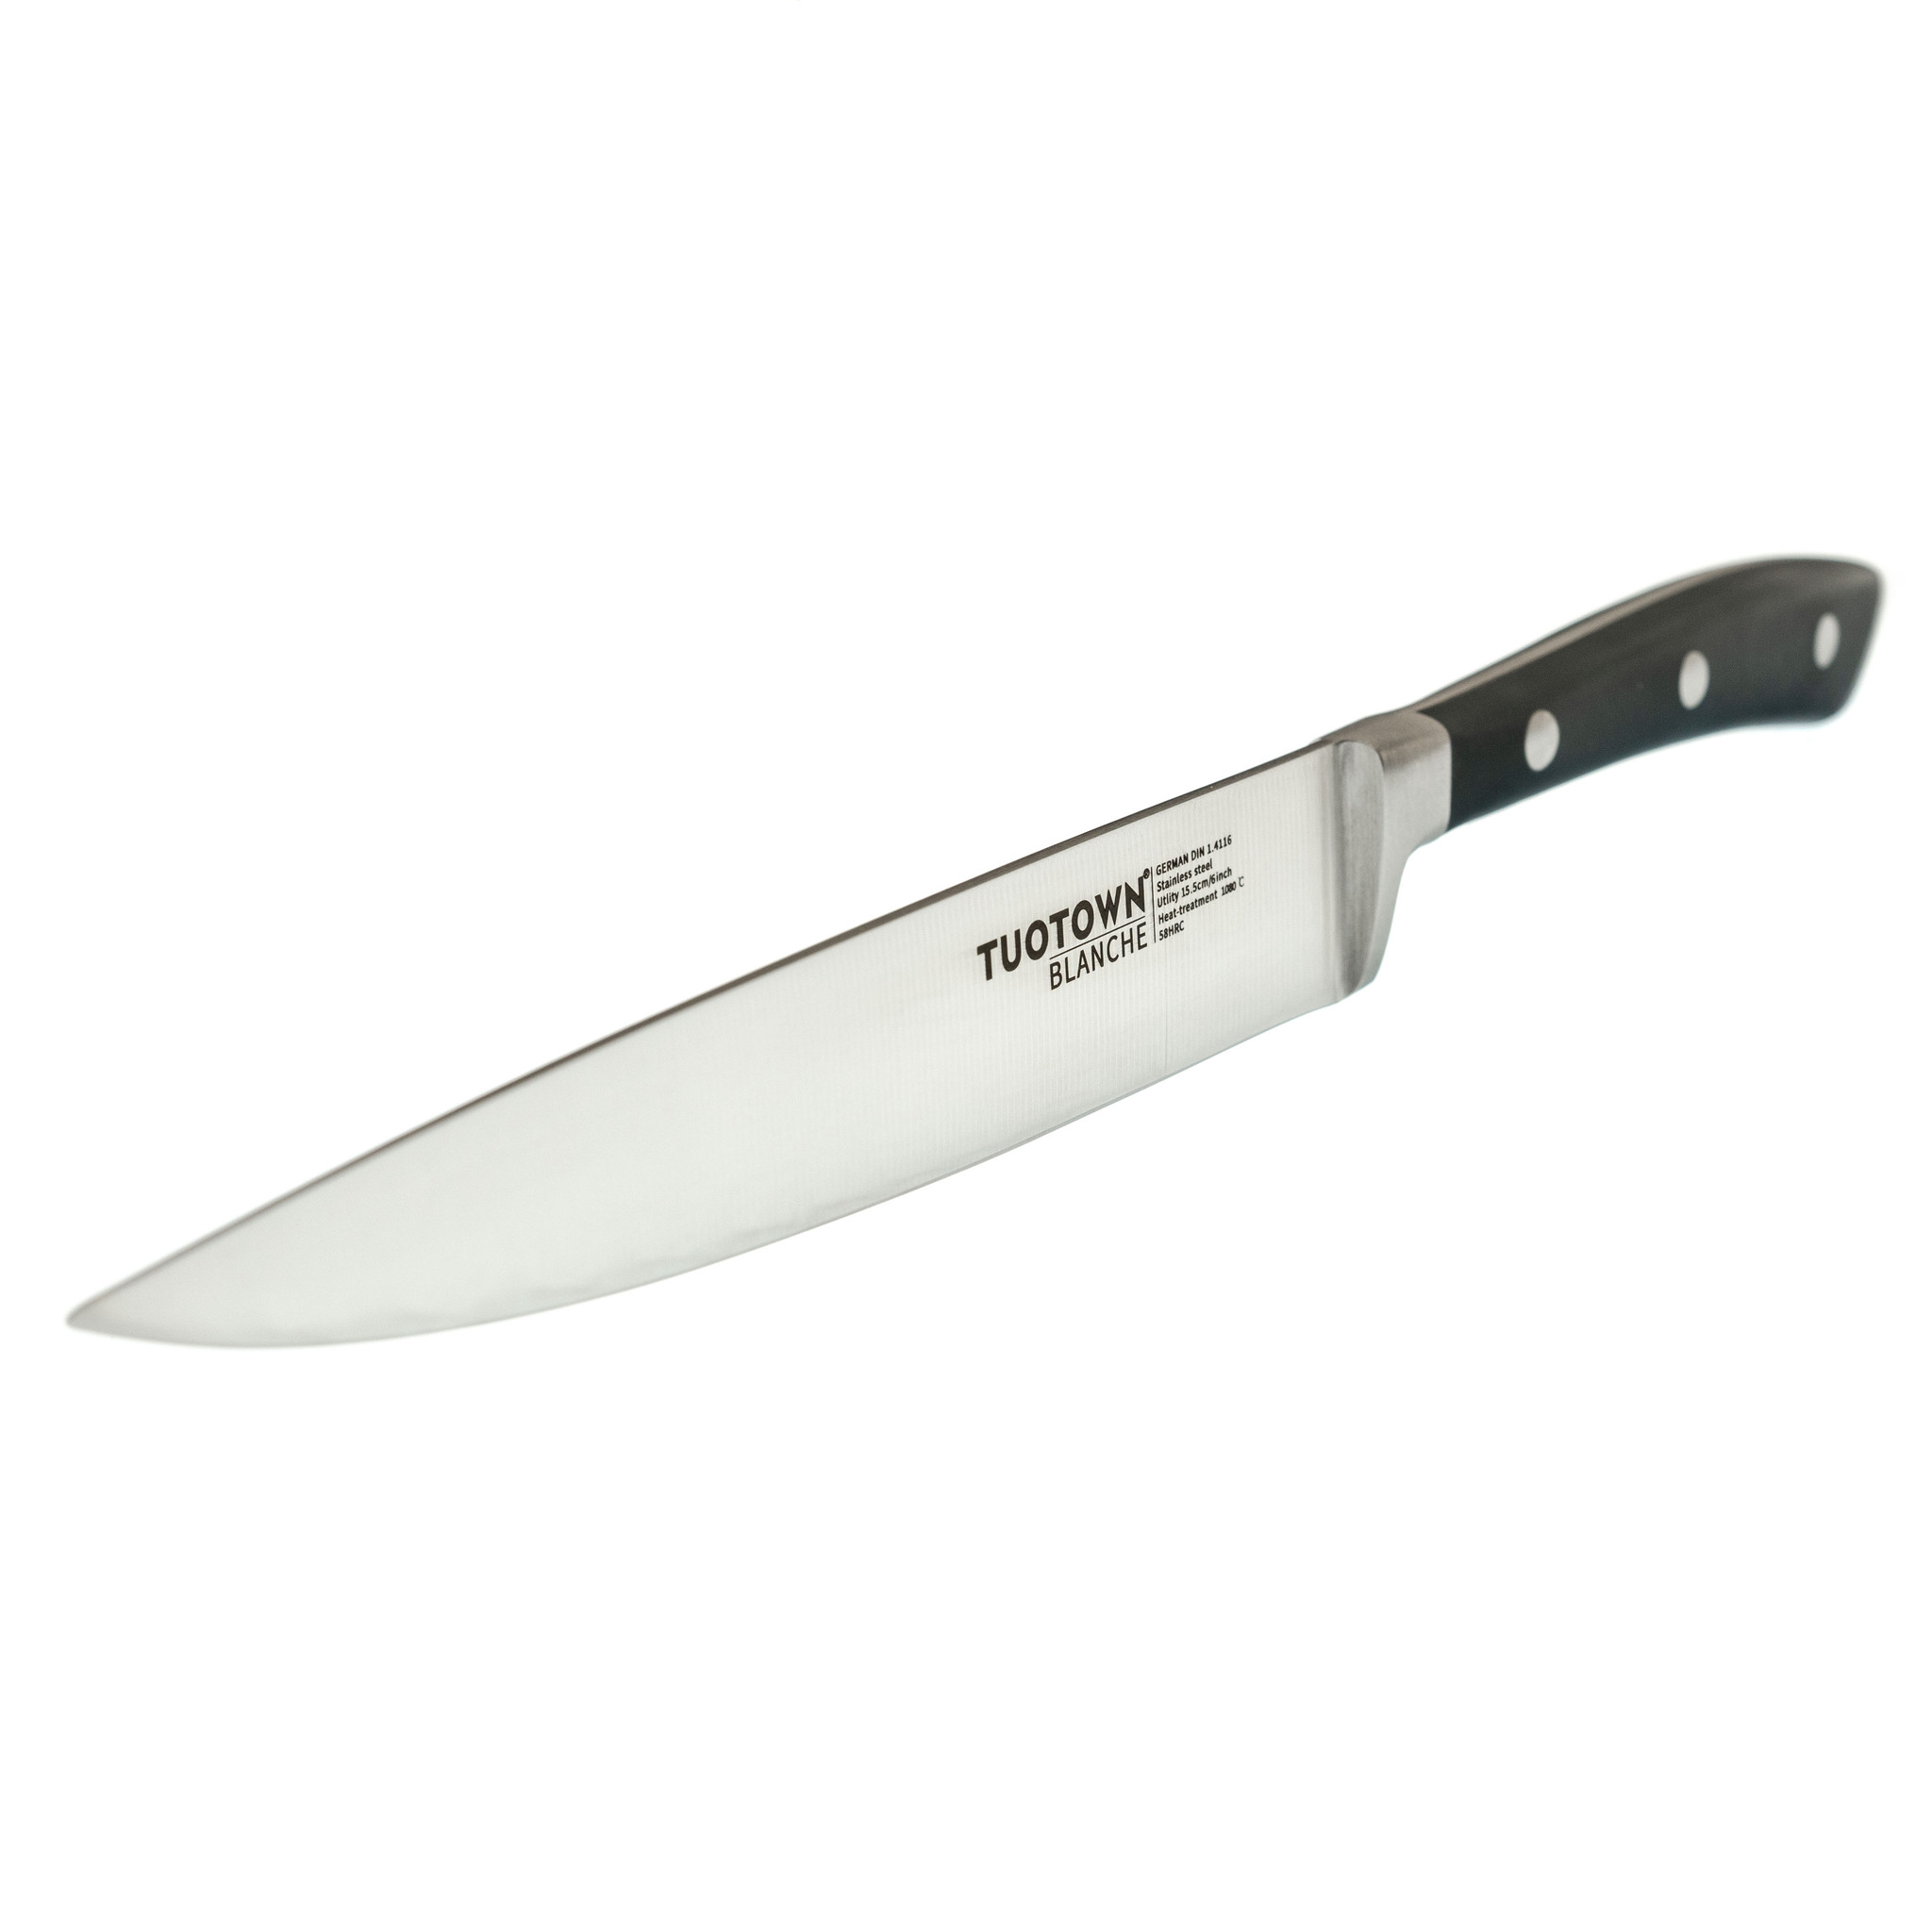 Кухонный универсальный нож Tuotown, серия BLANCHE, сталь 1.4116 - фото 3